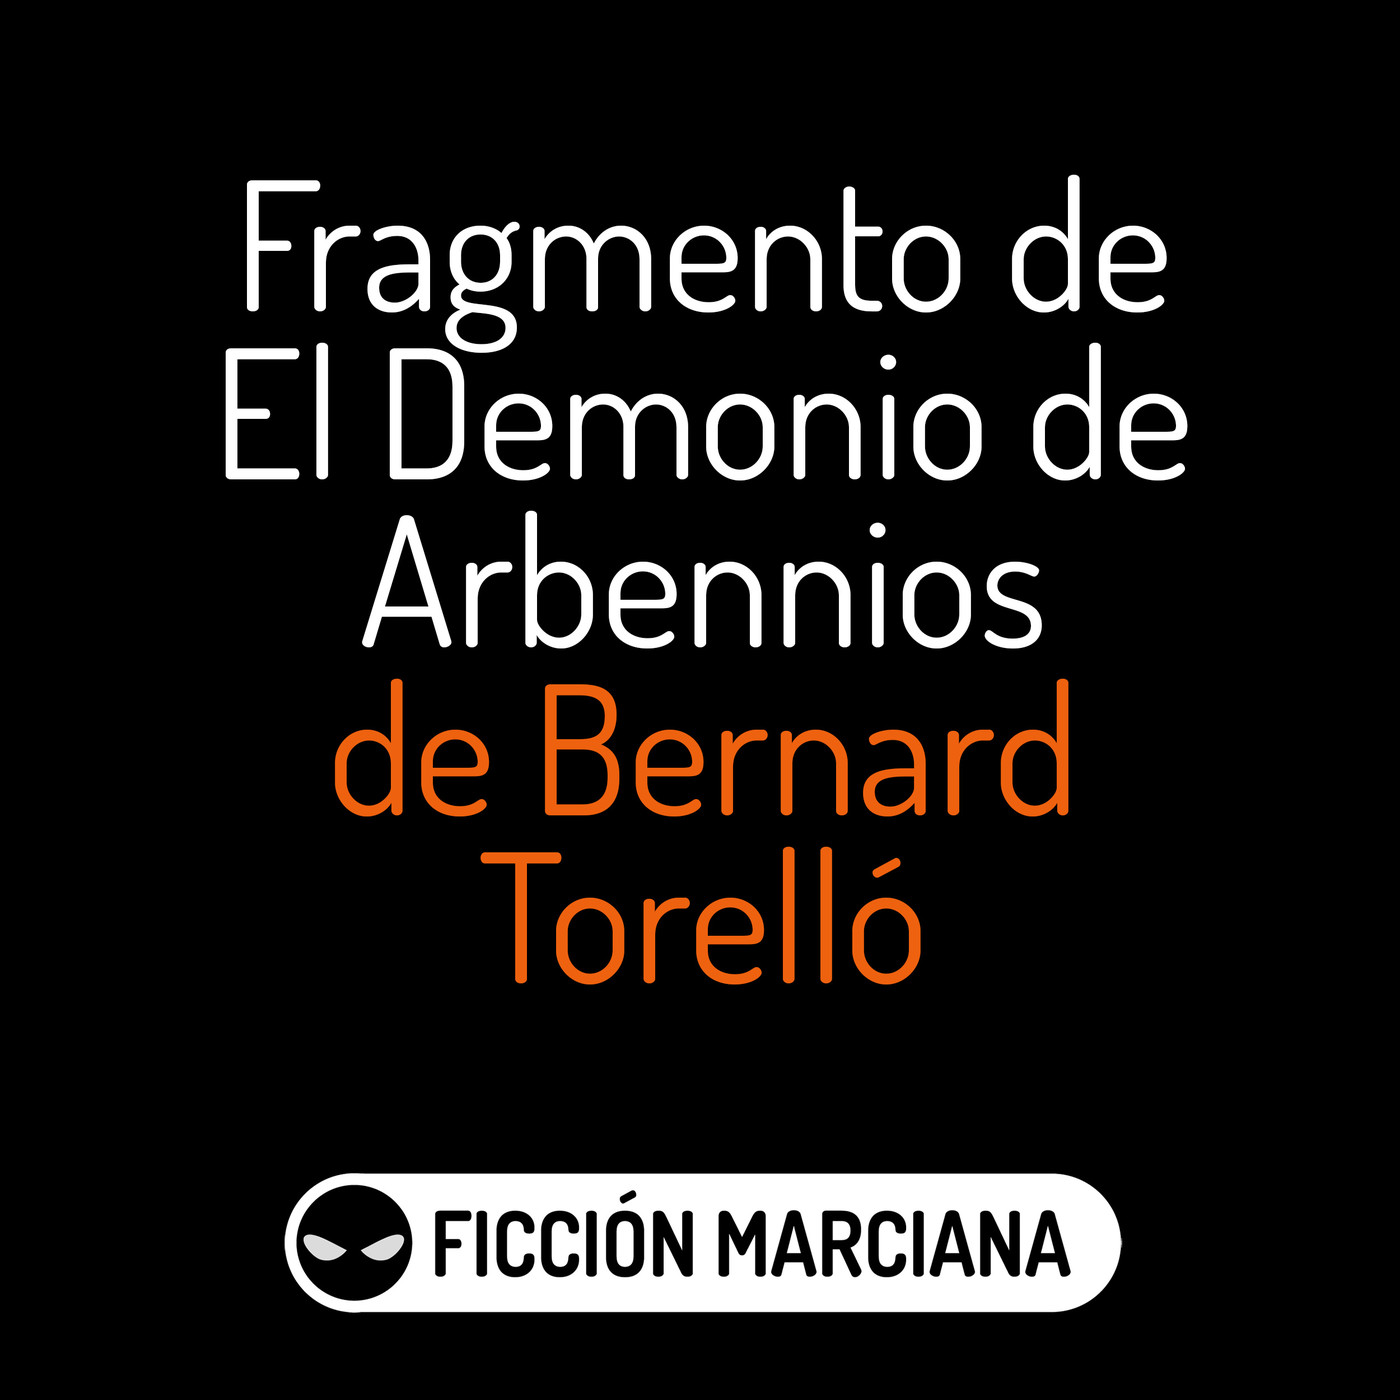 EL DEMONIO DE ARBENNIOS - Capítulo primero (Bernard Torelló) | Ficción Sonora - Audiolibro